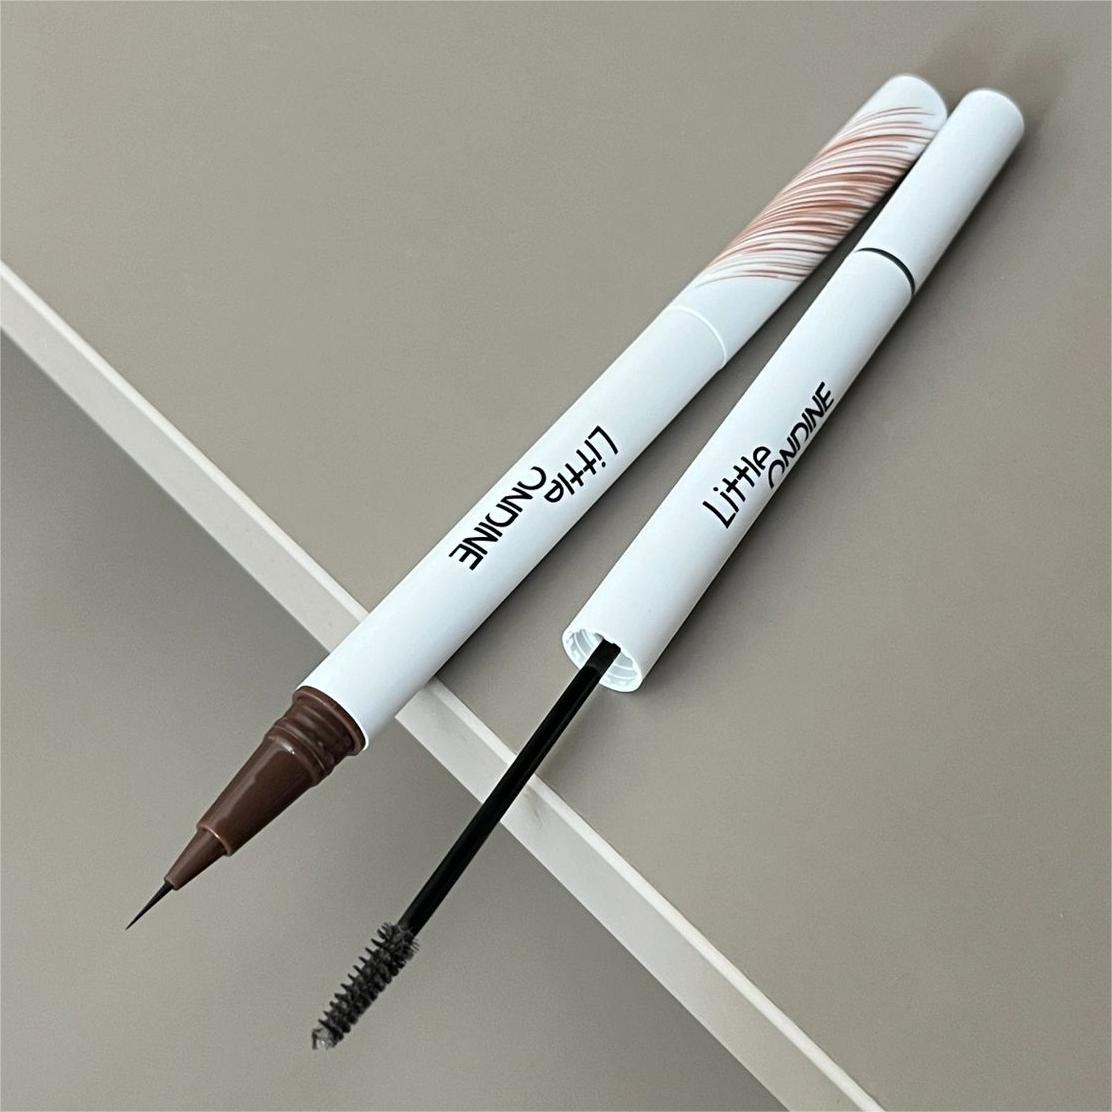 LITTLE ONDINE Double-ended Liquid Eyebrow Pencil 500mg+1.6ml 小奥汀双头水眉笔